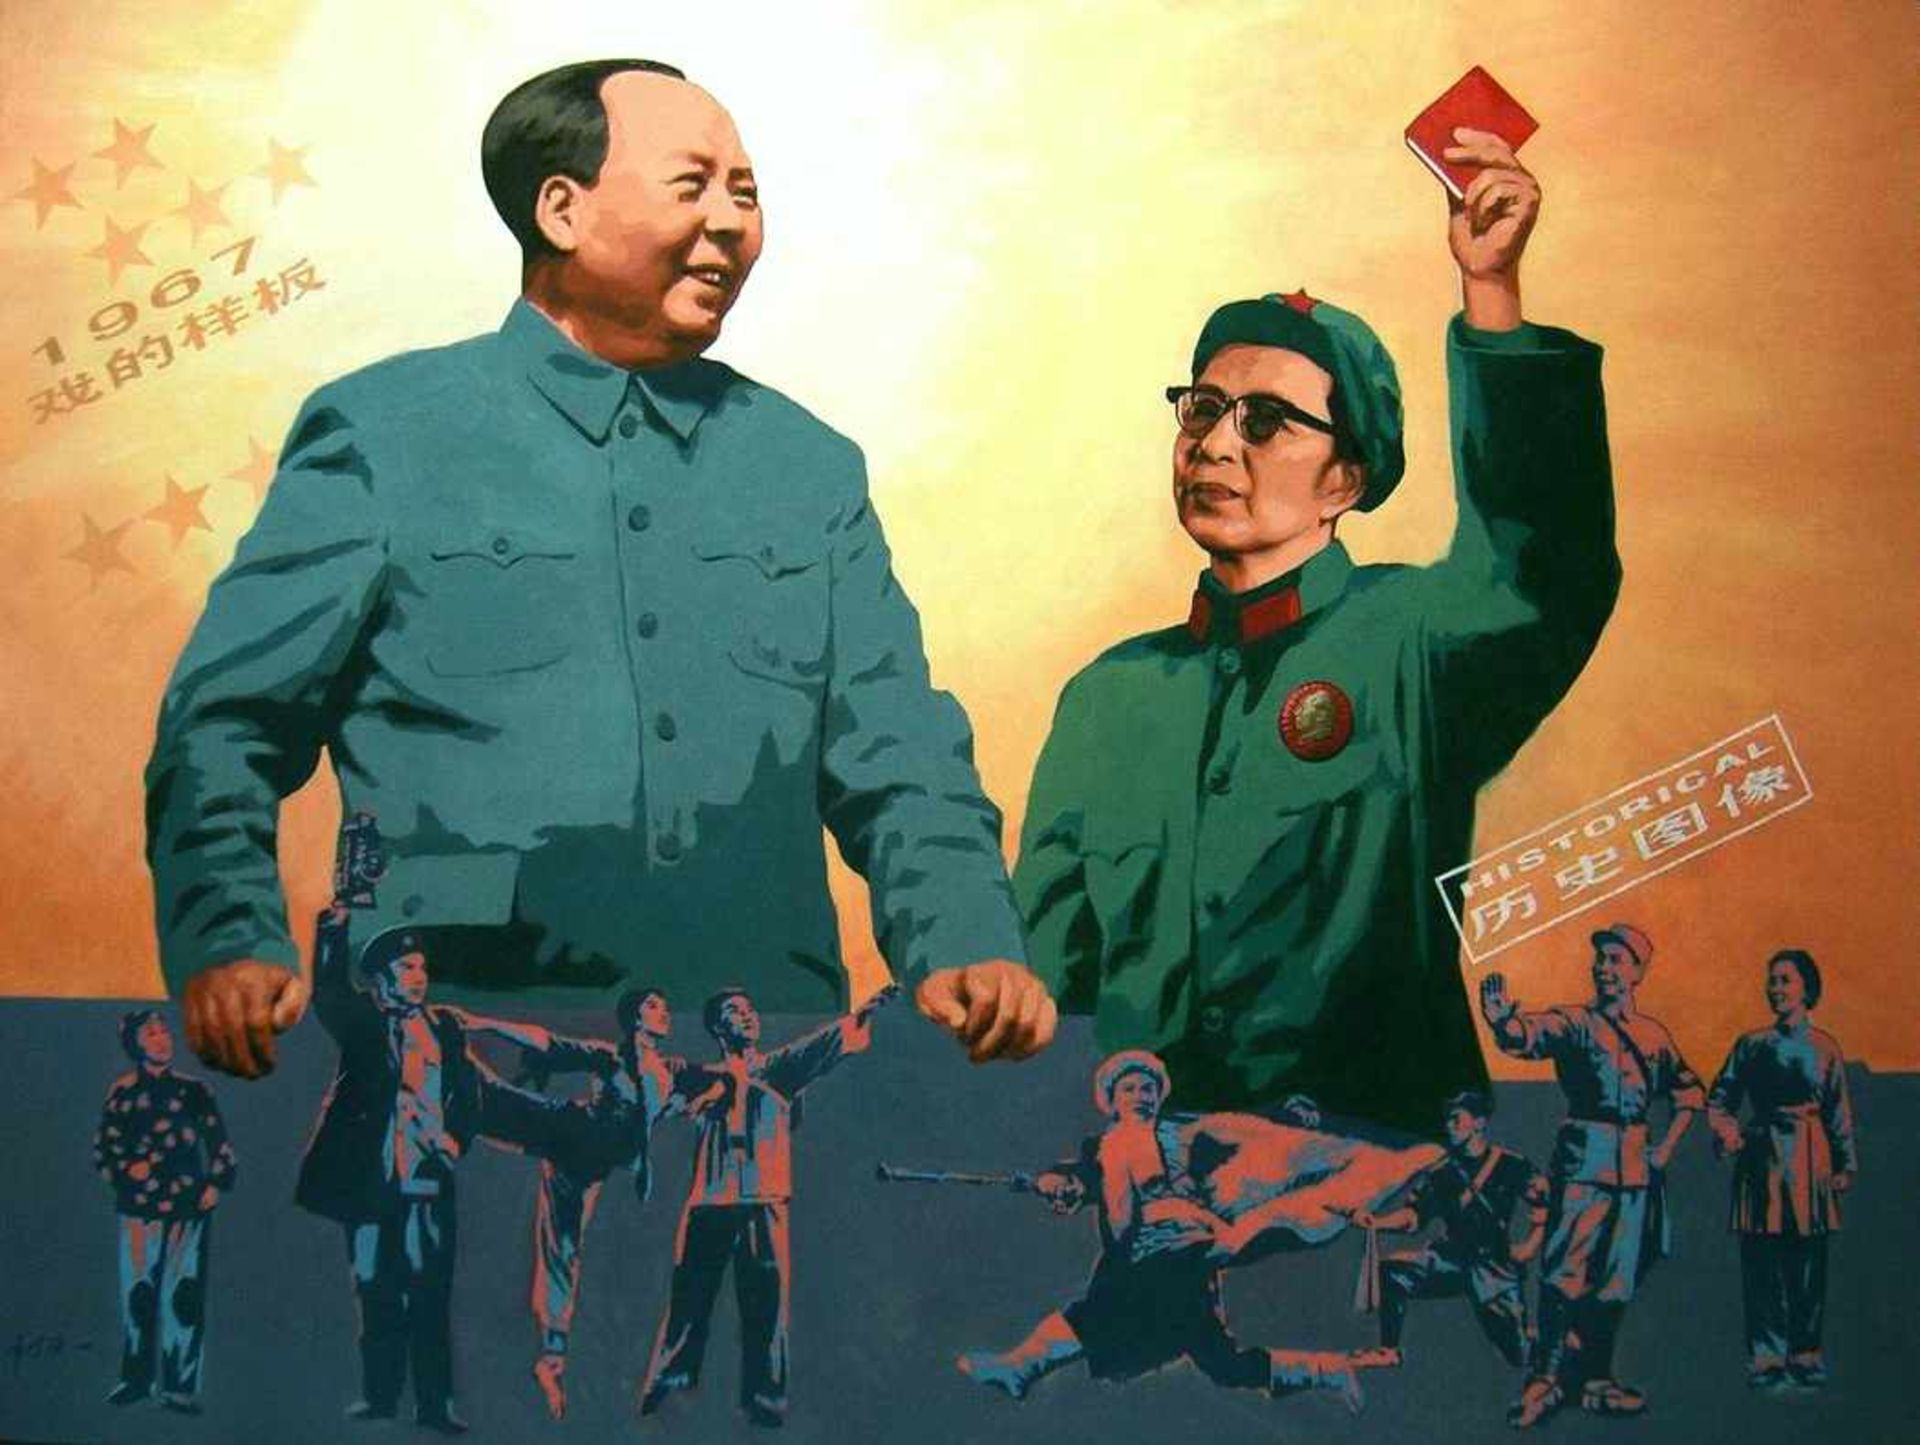 SHENGQIANG ZHANG, "Mao III", Propagandabild, Öl auf Leinwand, 3. Drittel 20. Jahrhundert